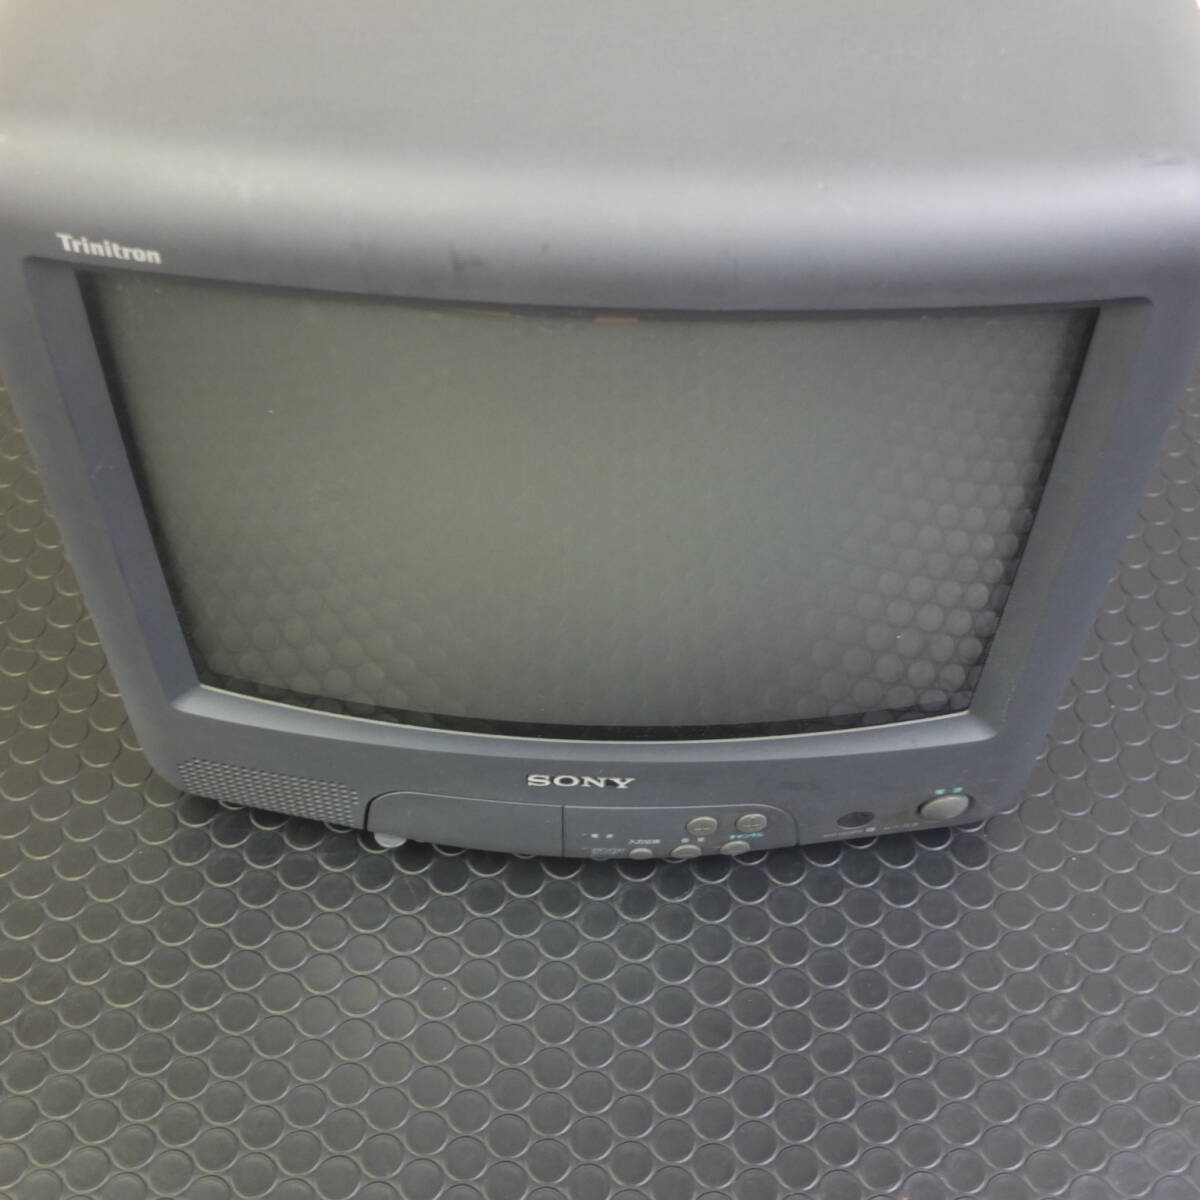 SONY/ソニー Trinitron/トリニトロン ブラウン管 カラーテレビ 14型 KV-14GP2 現状品_画像9